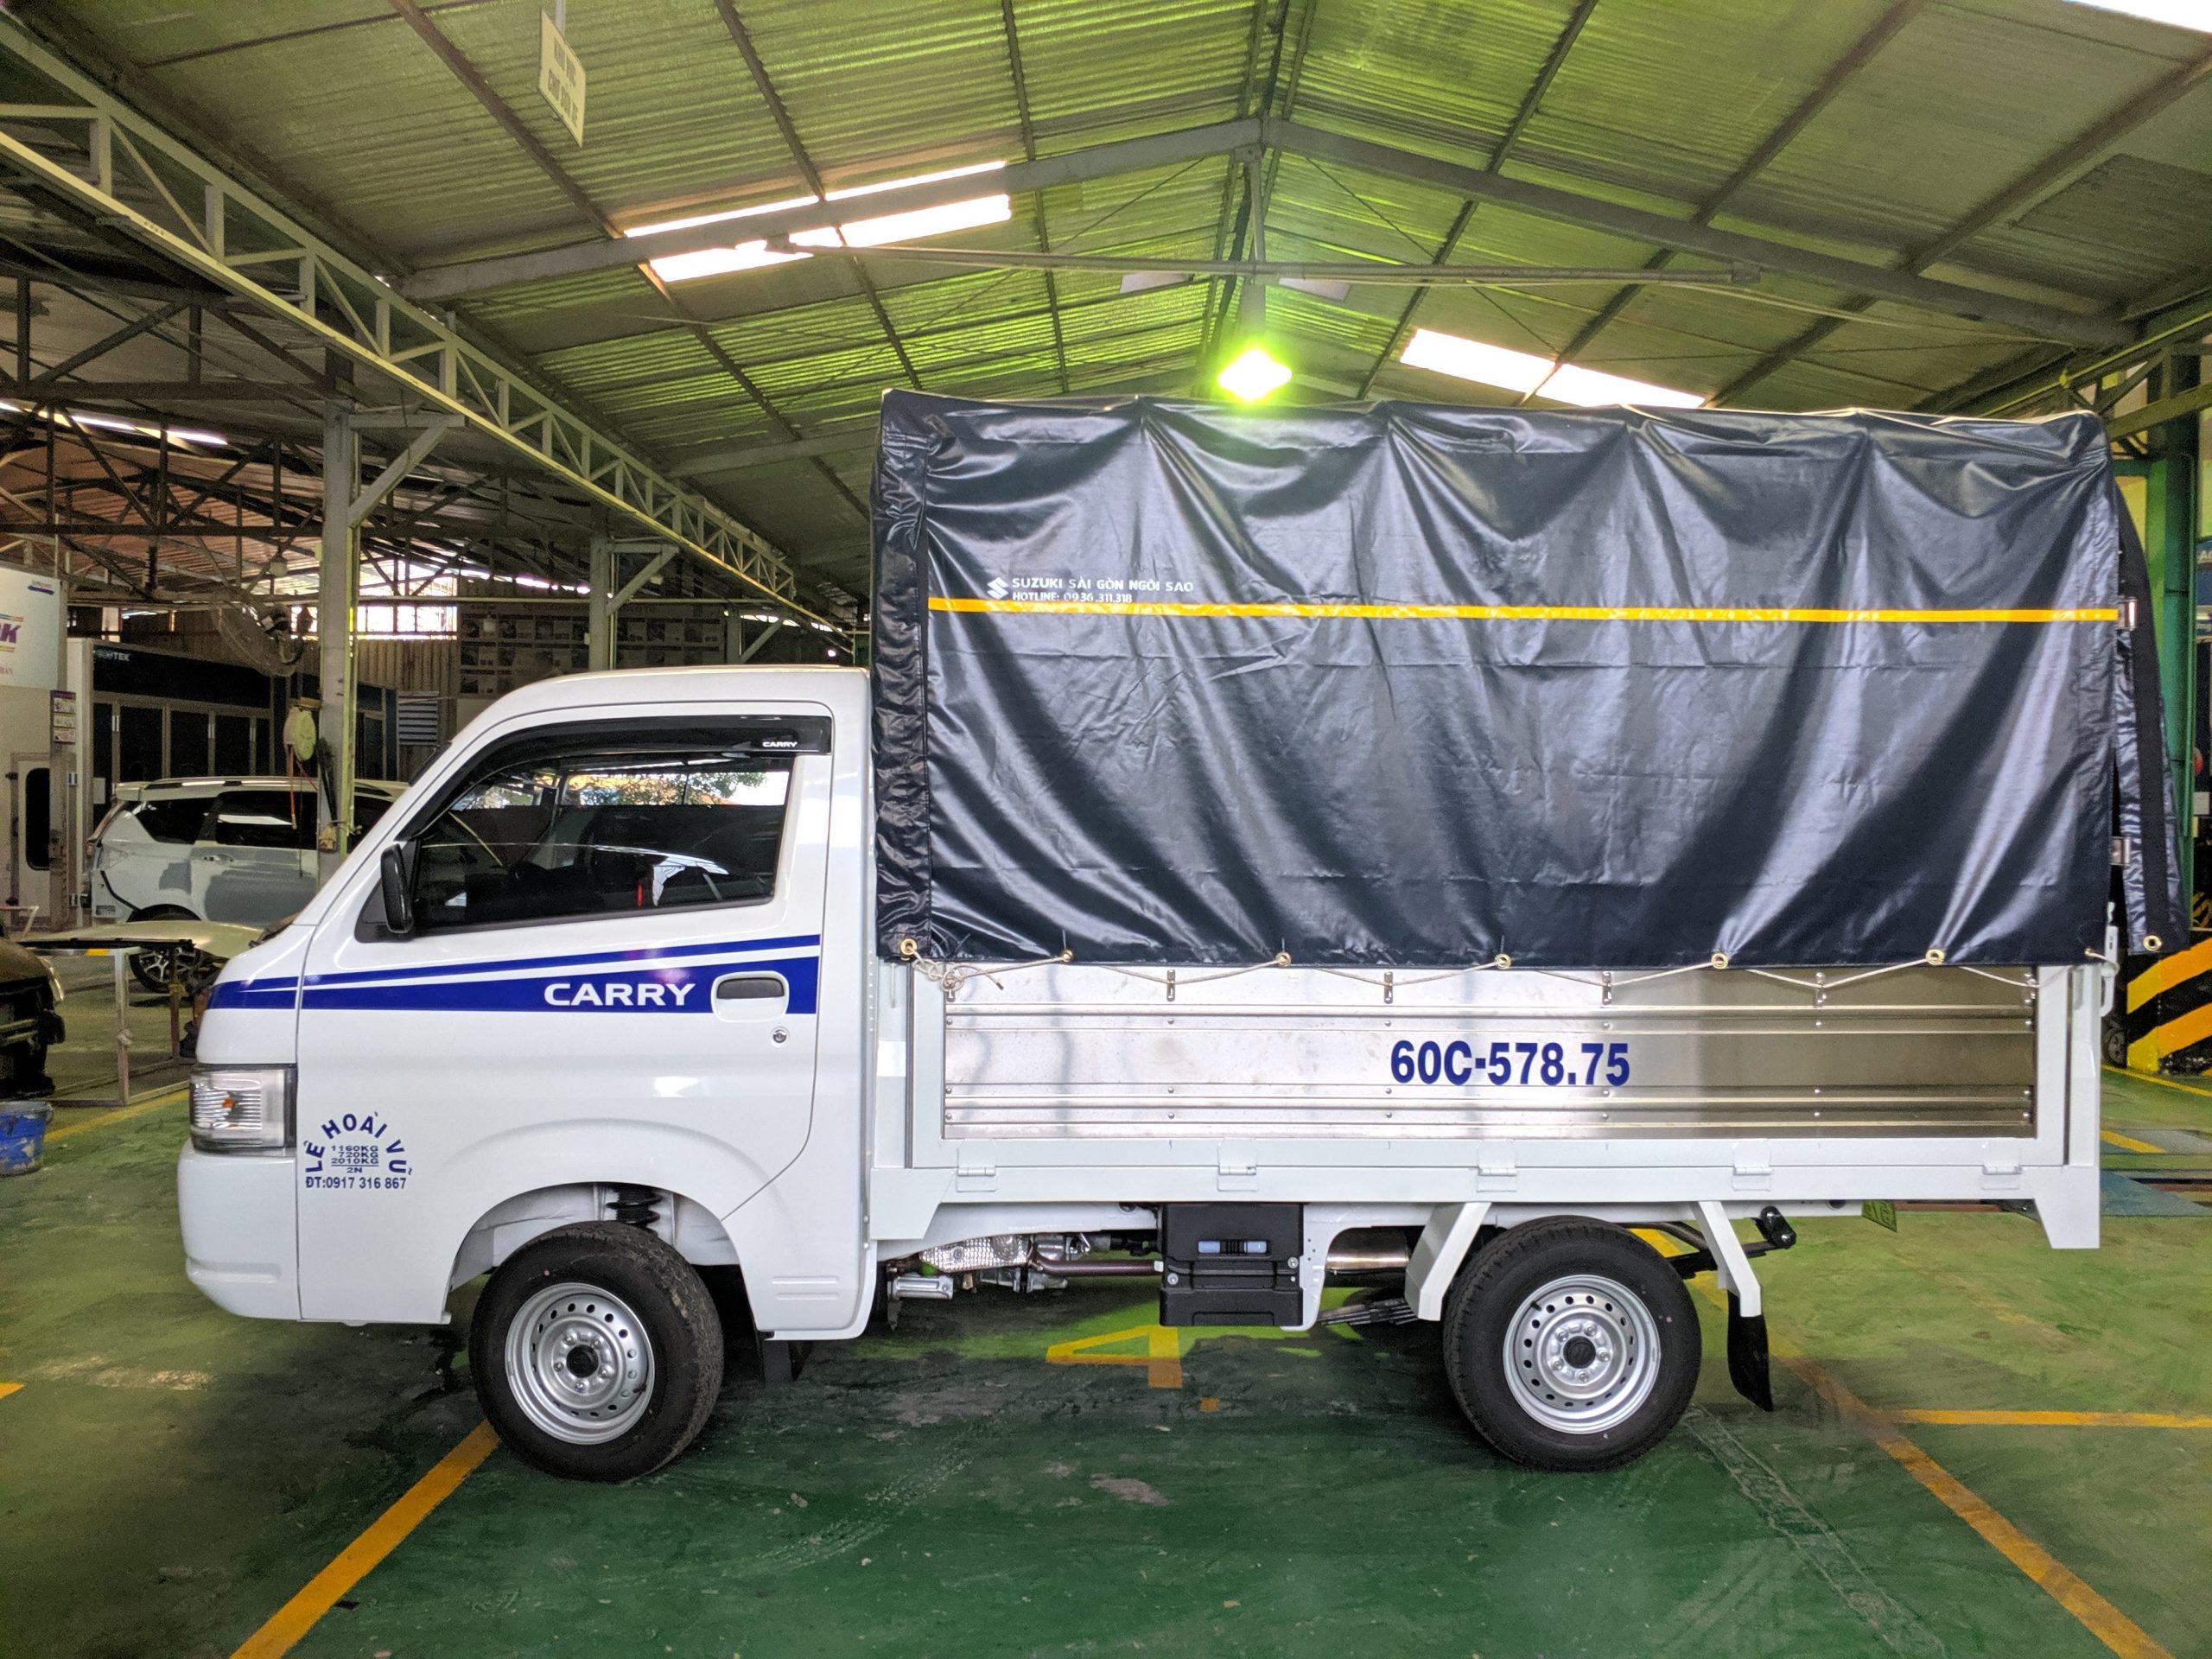 xe tải suzuki 750kg thùng bạt